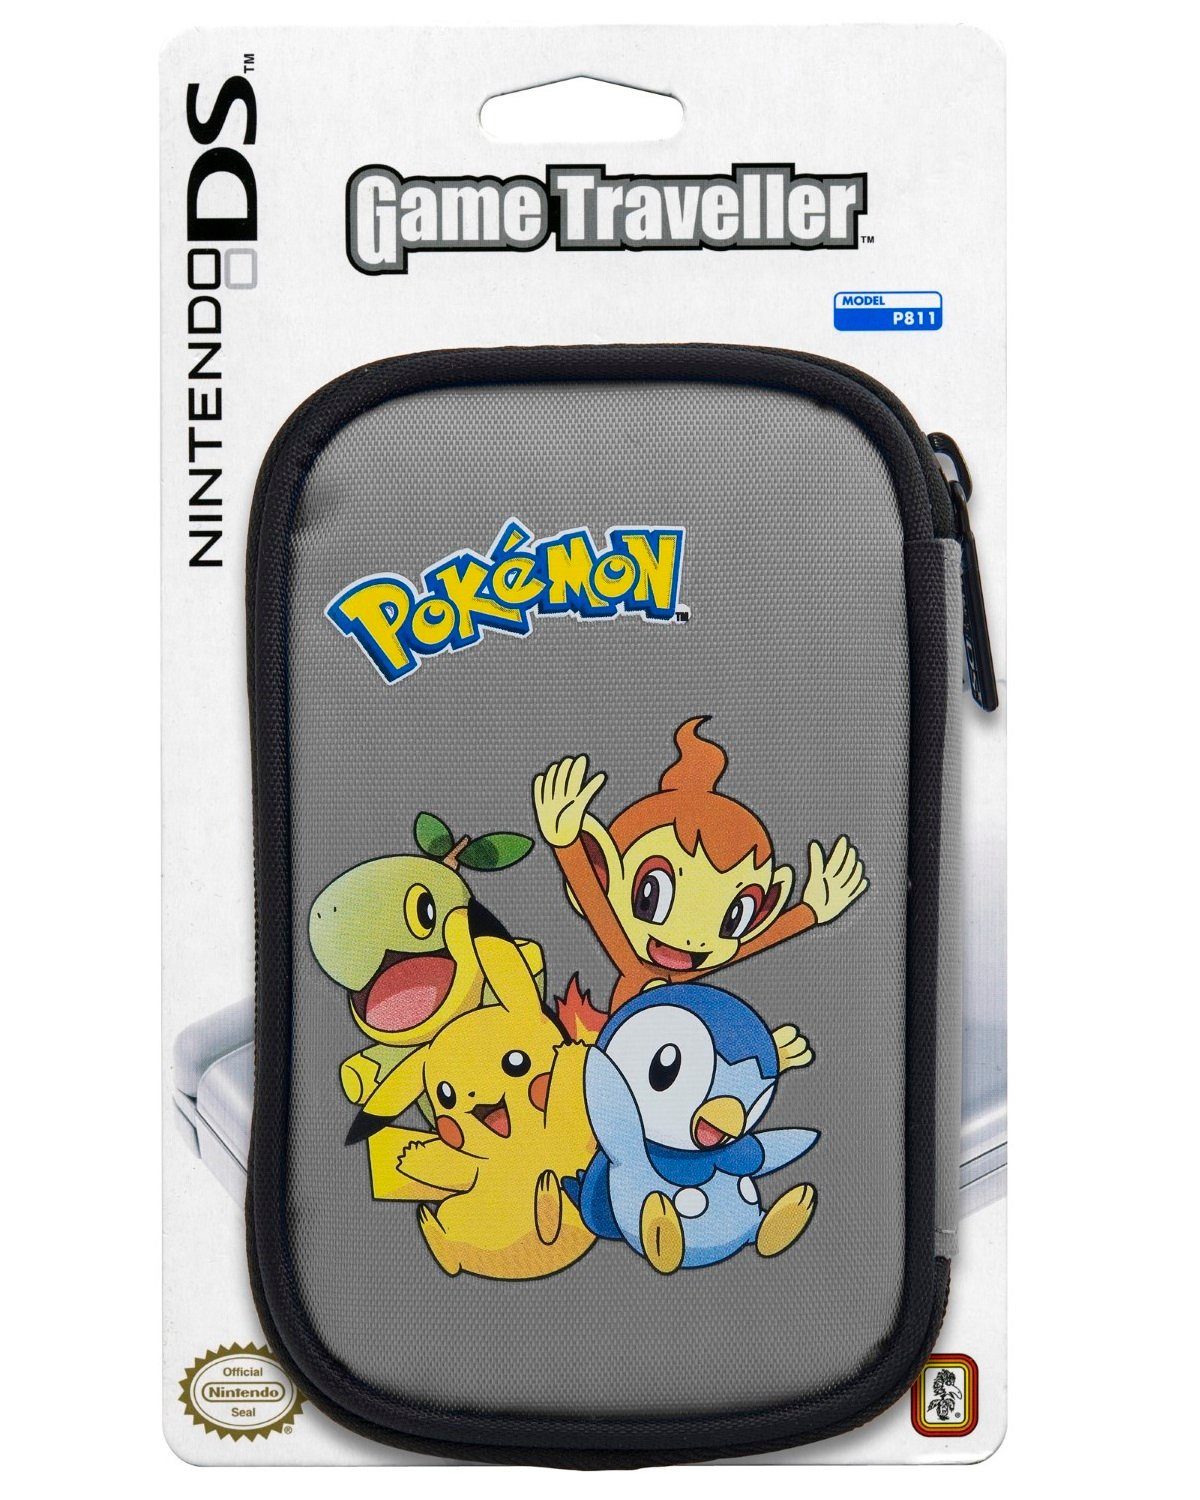 BigBen Controller-Schutzhülle Tasche Pokemon Babies Hülle Case Etui Bag,  Official Nintendo Licensed Product, Aufbewahrung für Spiele und Zubehör,  Schutzhülle